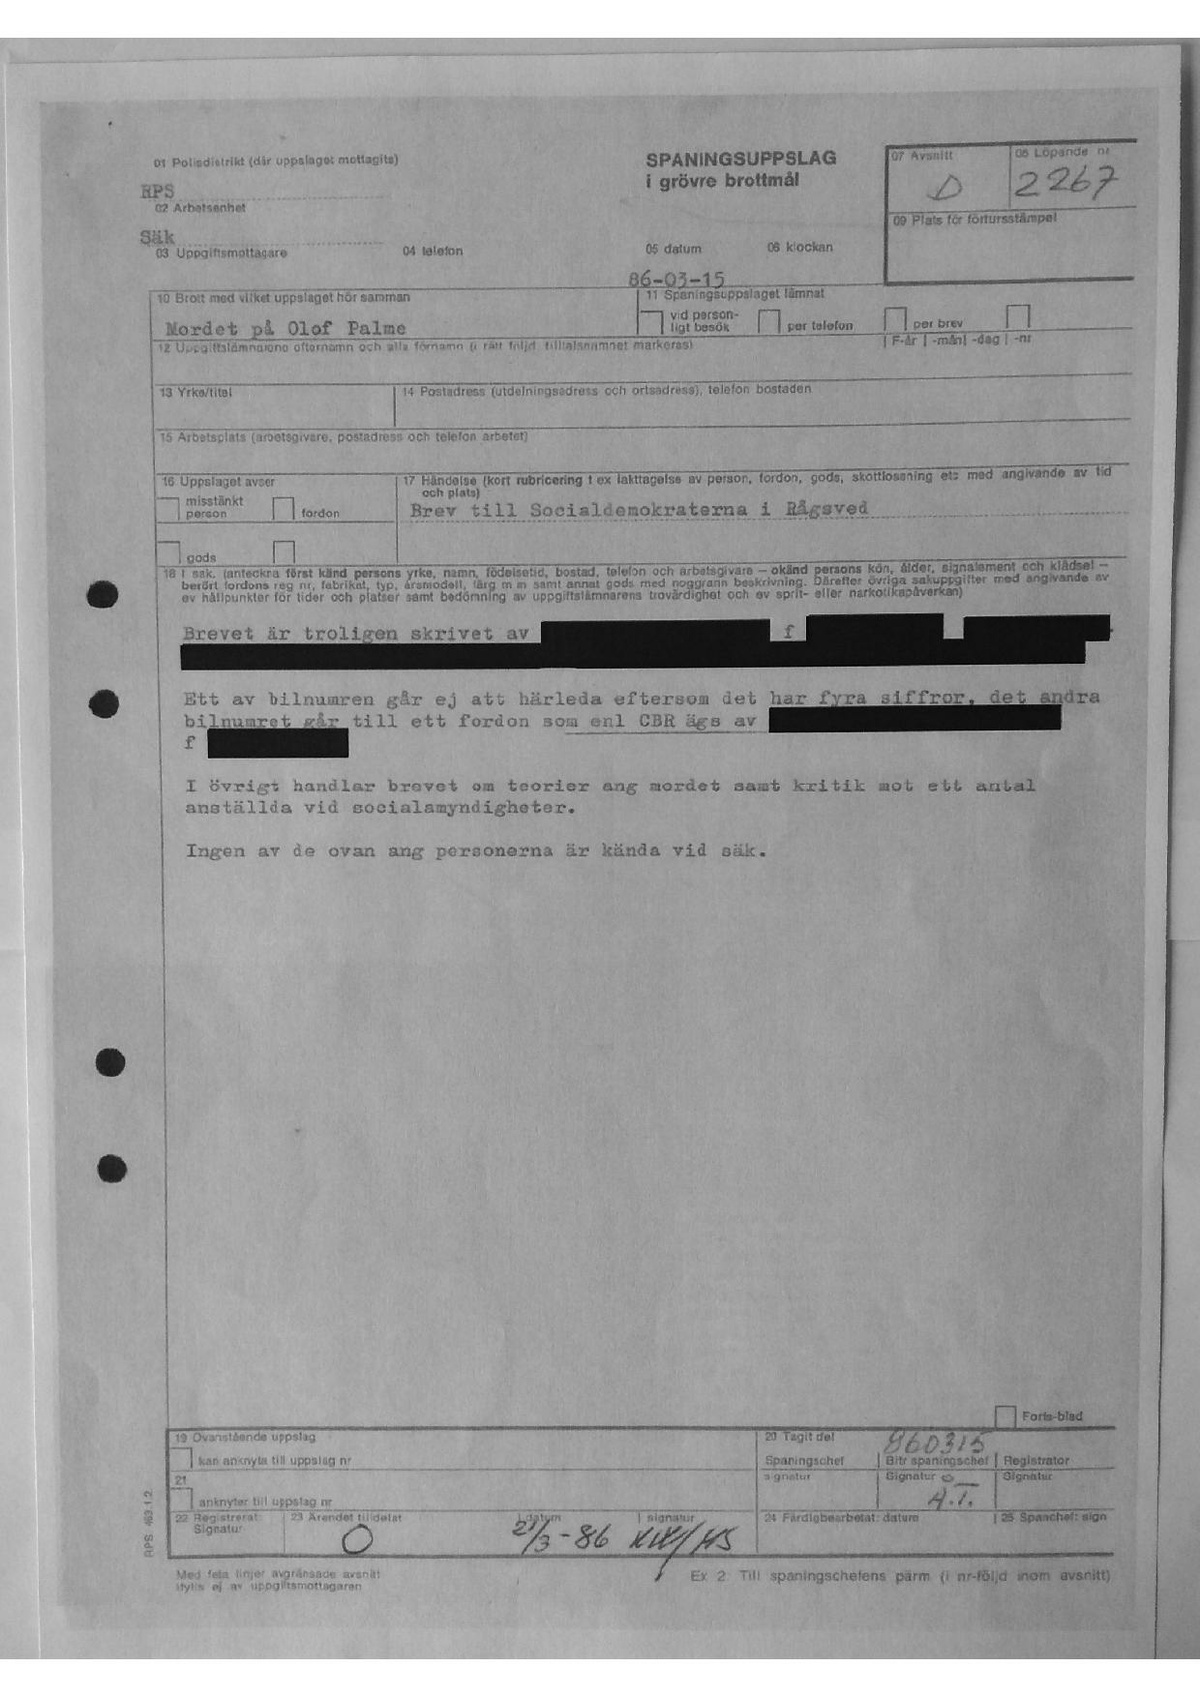 Pol-1986-03-15 D2267-00 Brev-till-Socialdemokraternaoch.pdf